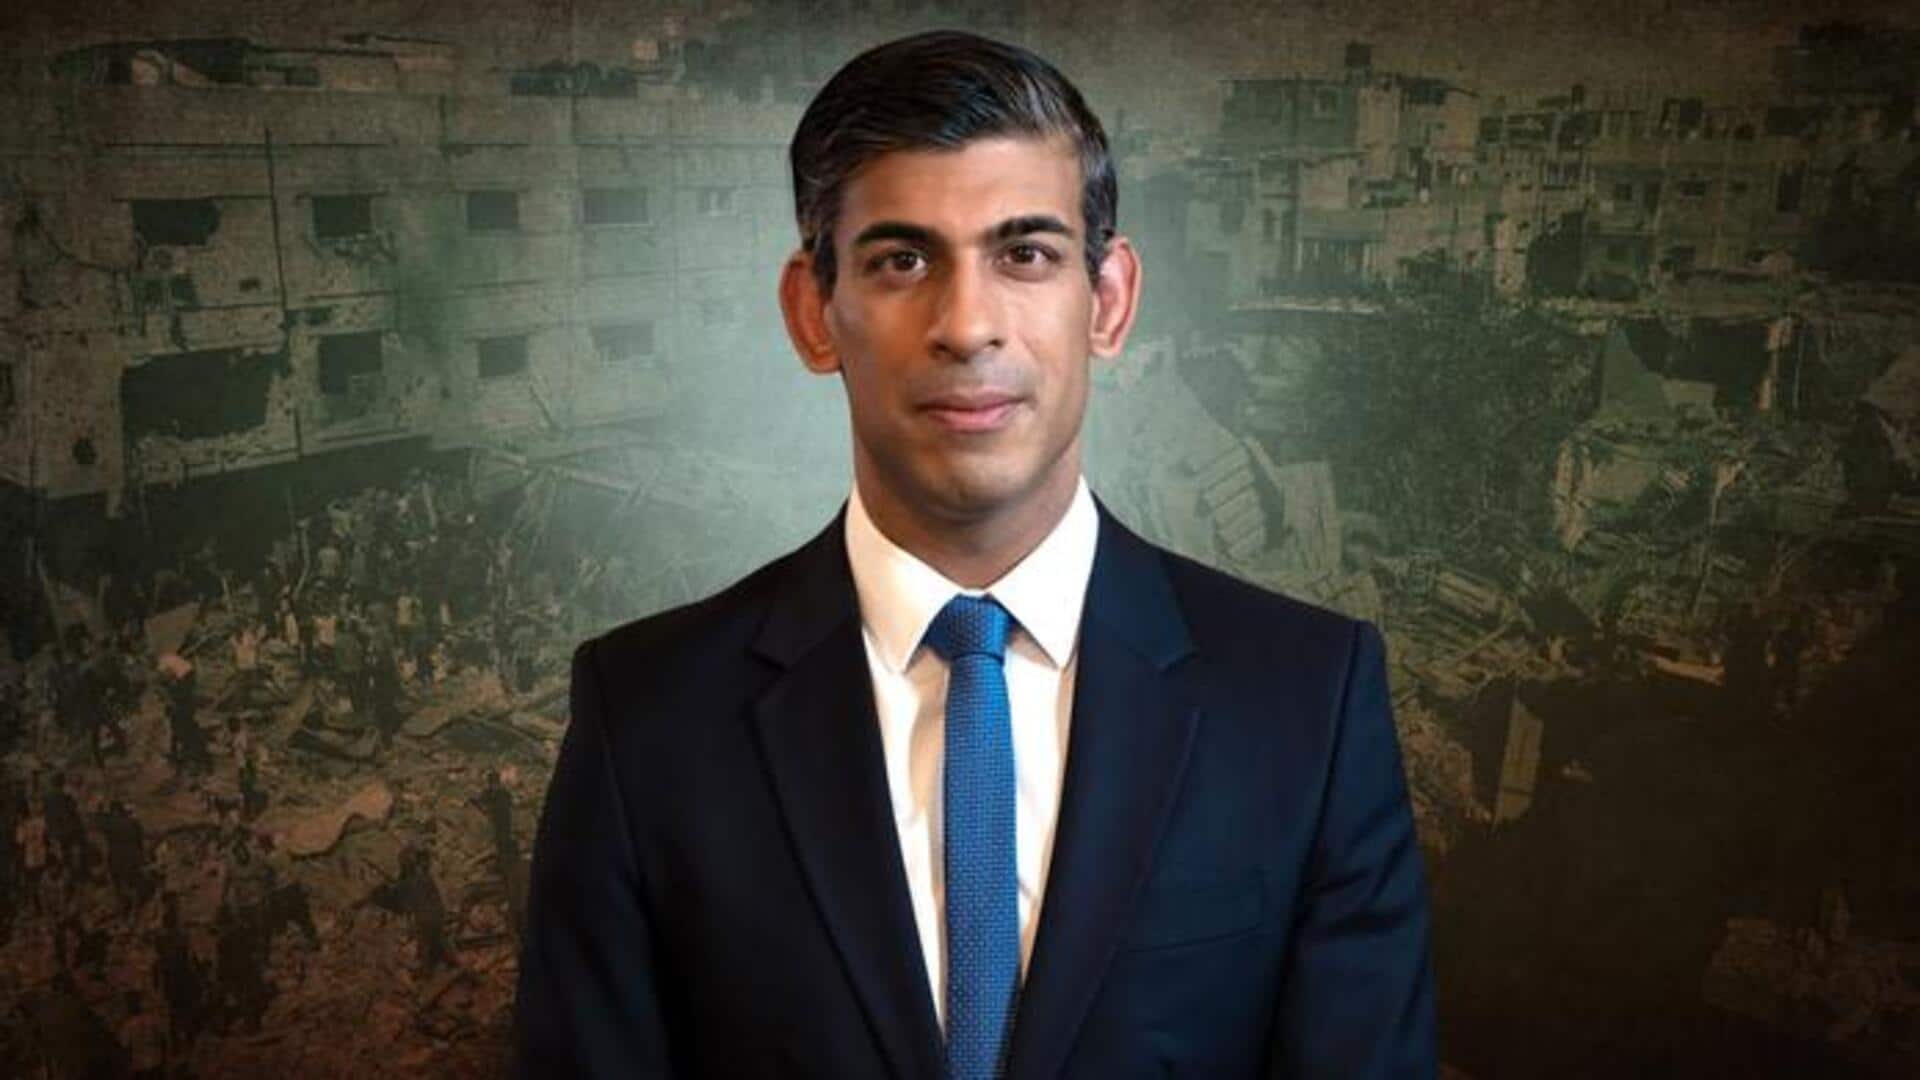 Rishi Sunak urges progress on Gaza aid during Israel visit